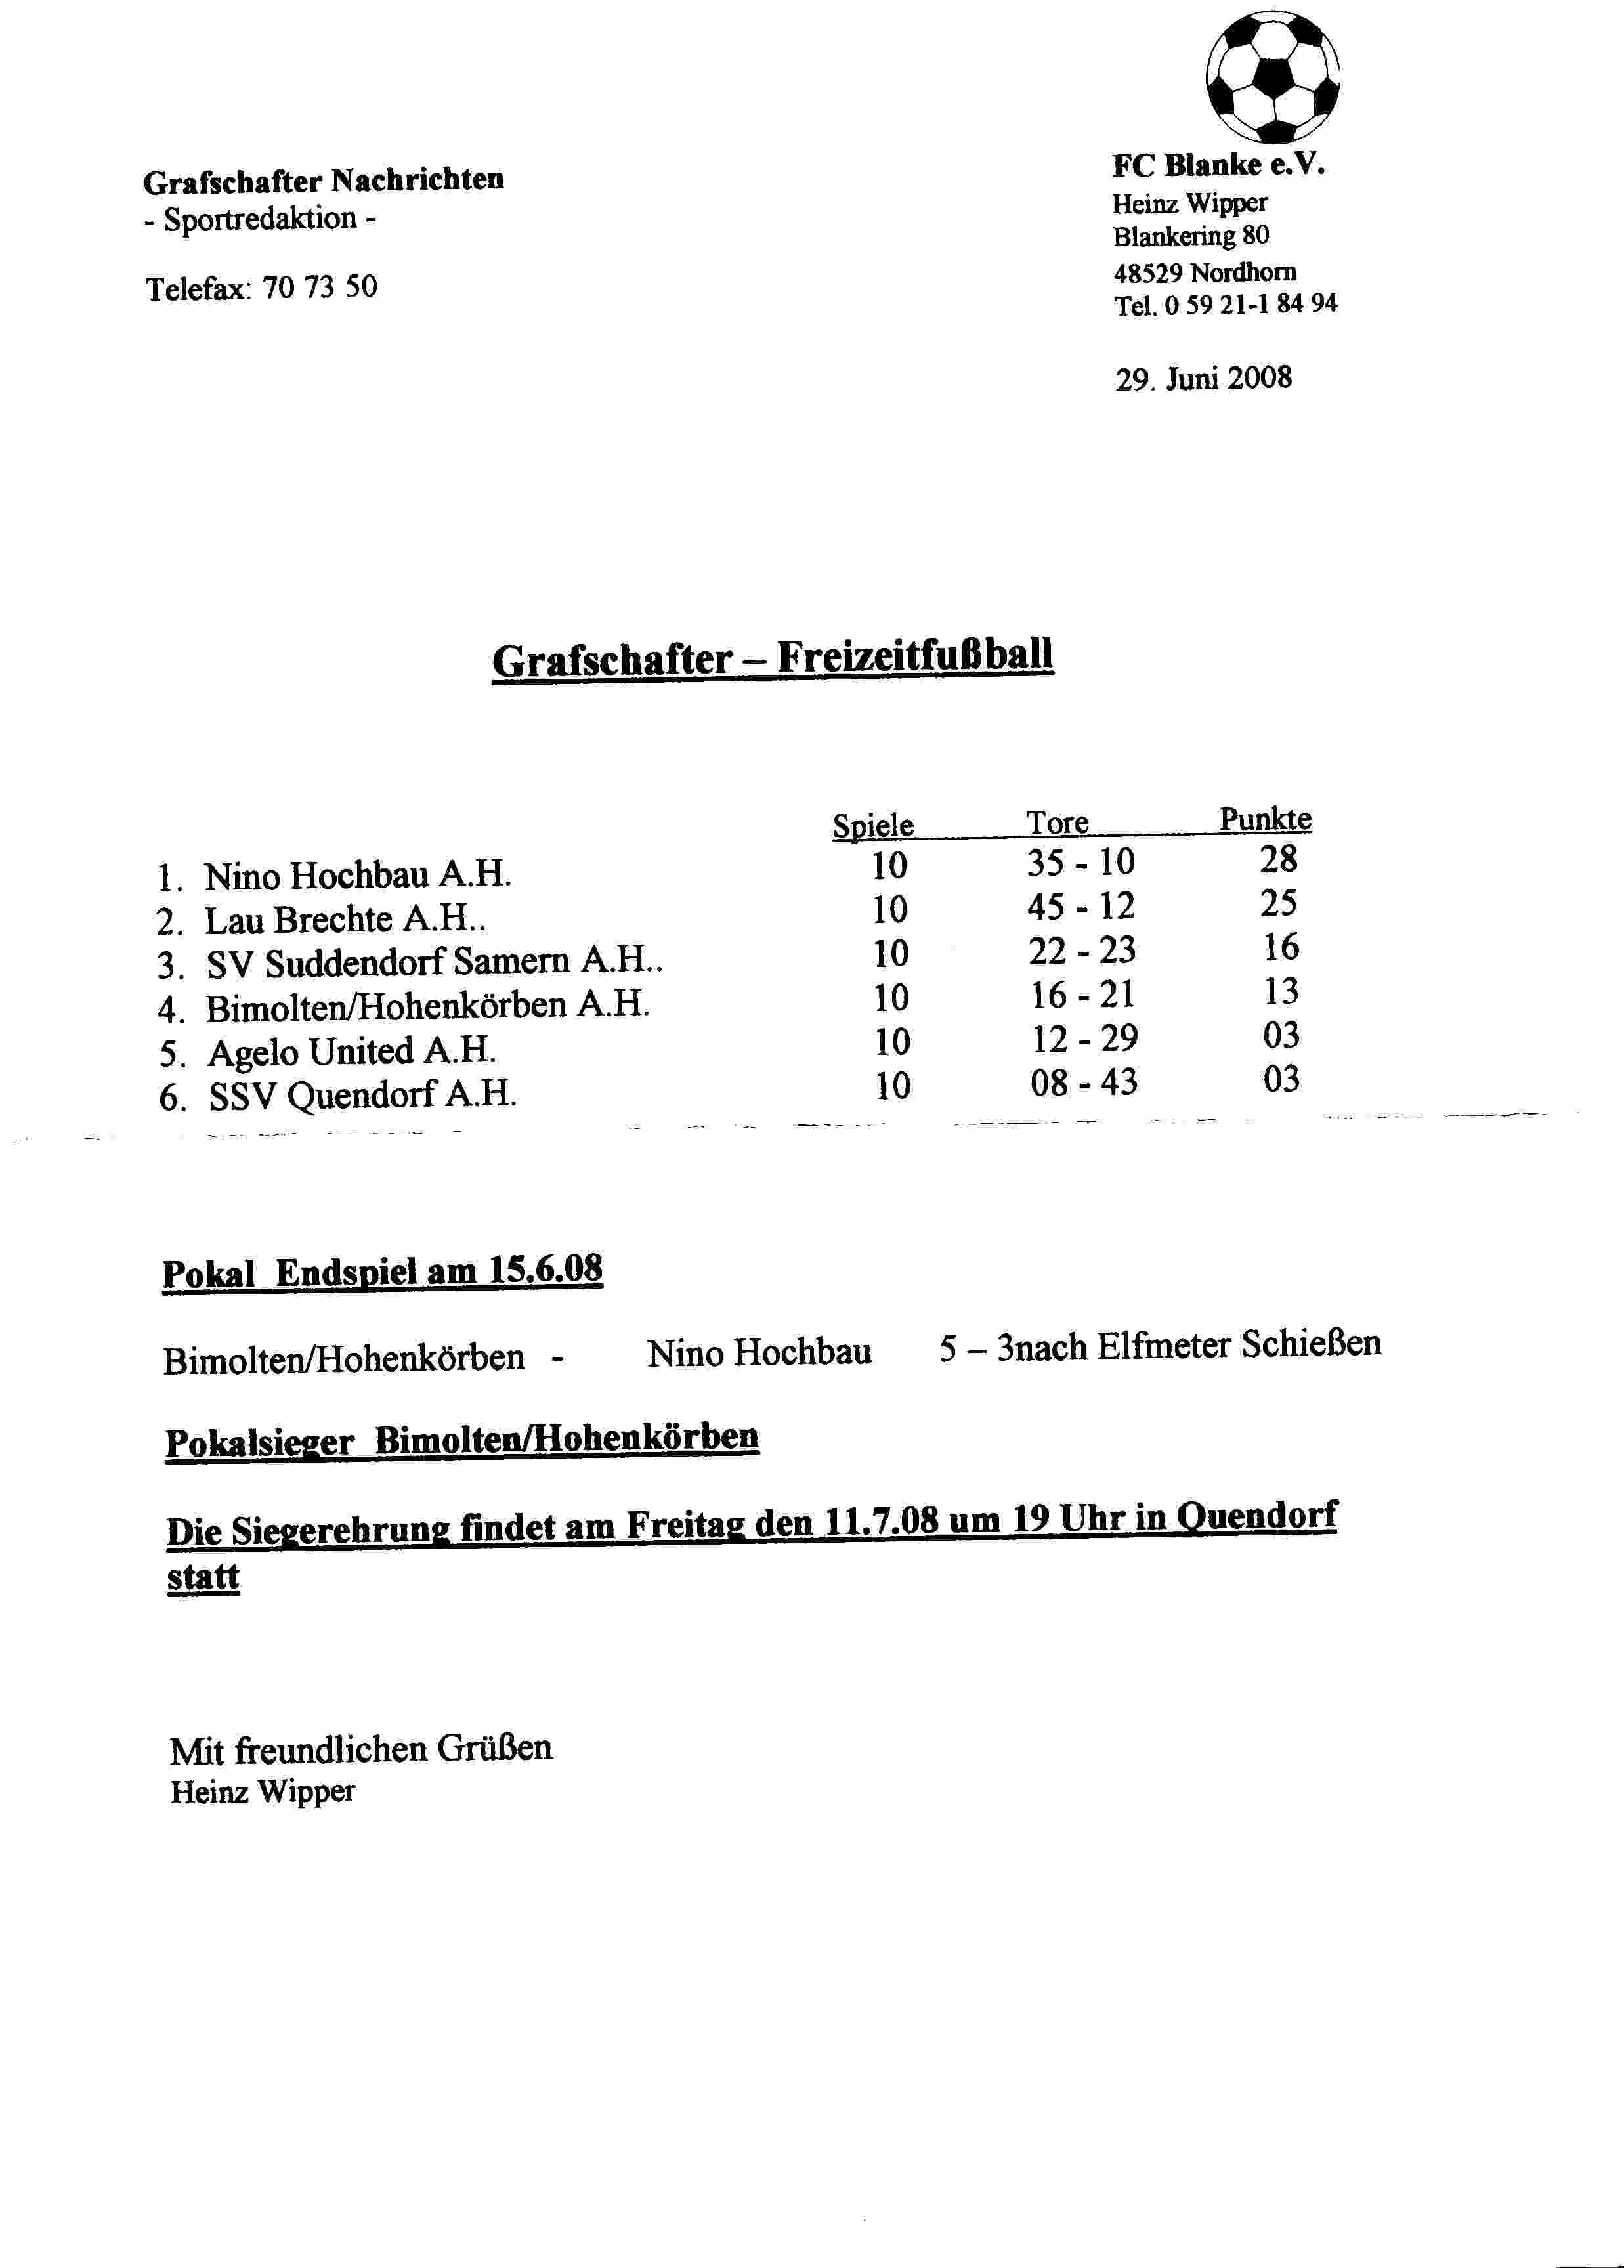 Eindstand Grafschafter Freizeit Fuβball Liga seizoen 2007/2008